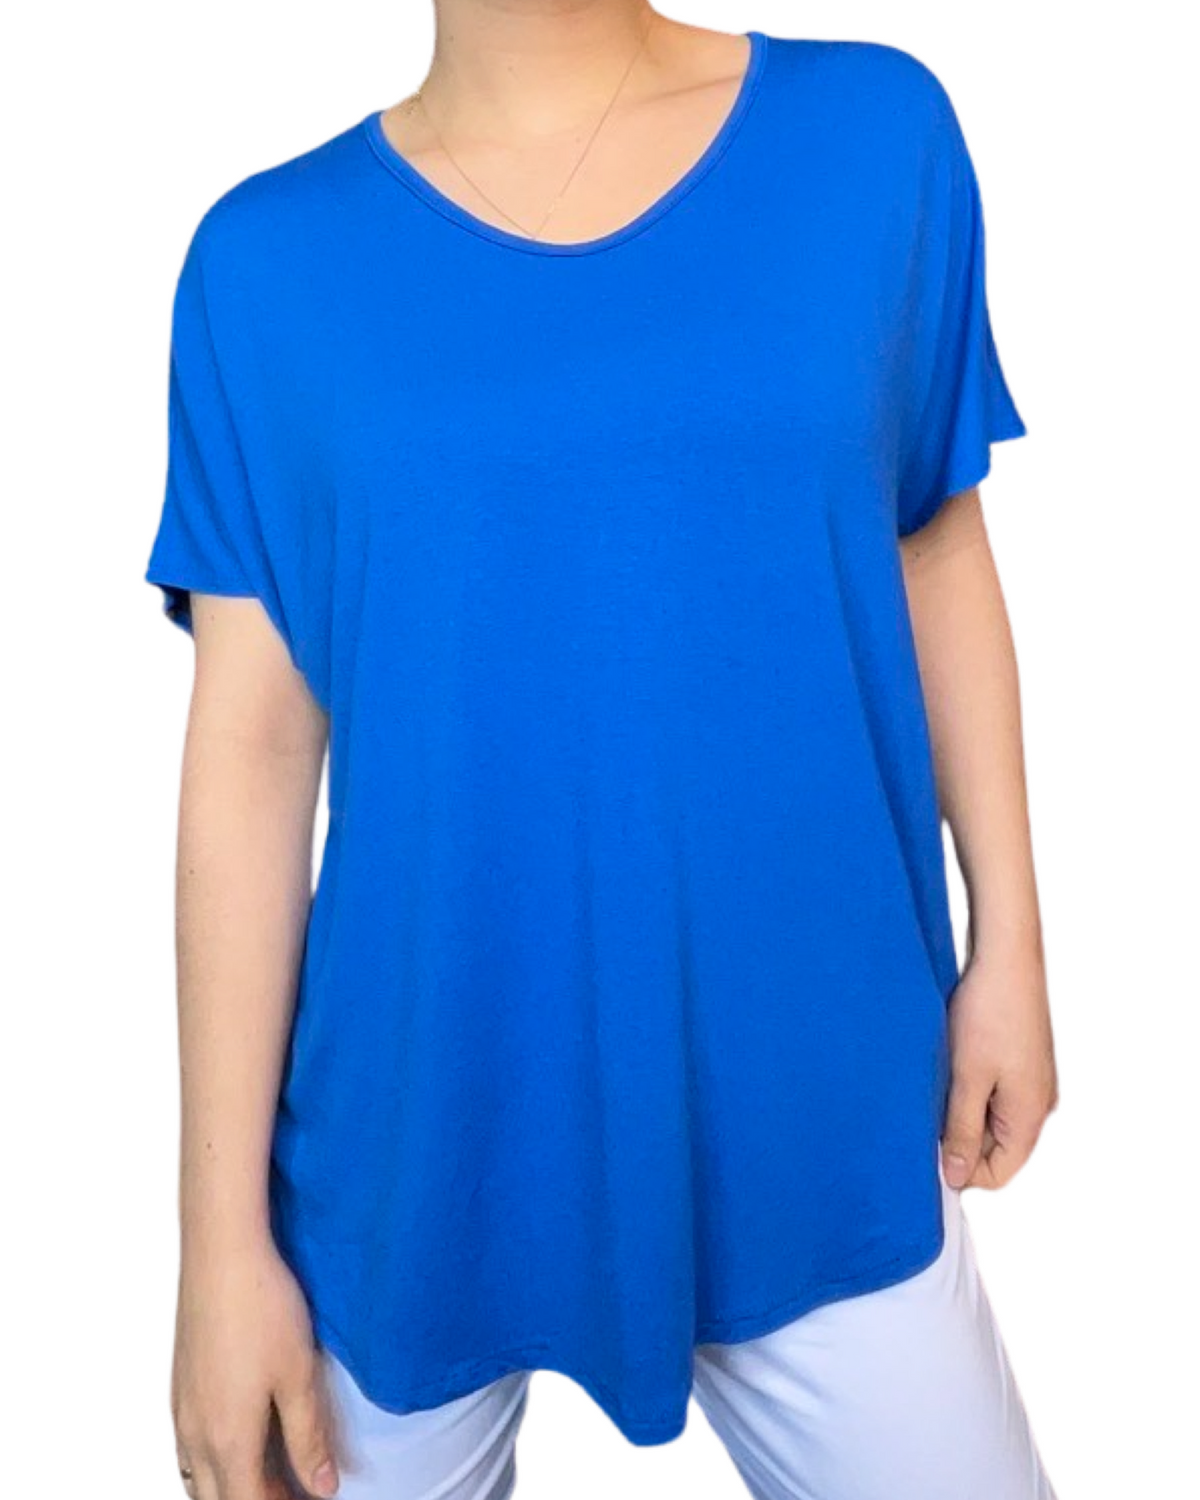 T-shirt couleur unie pour femme, bleu royal.